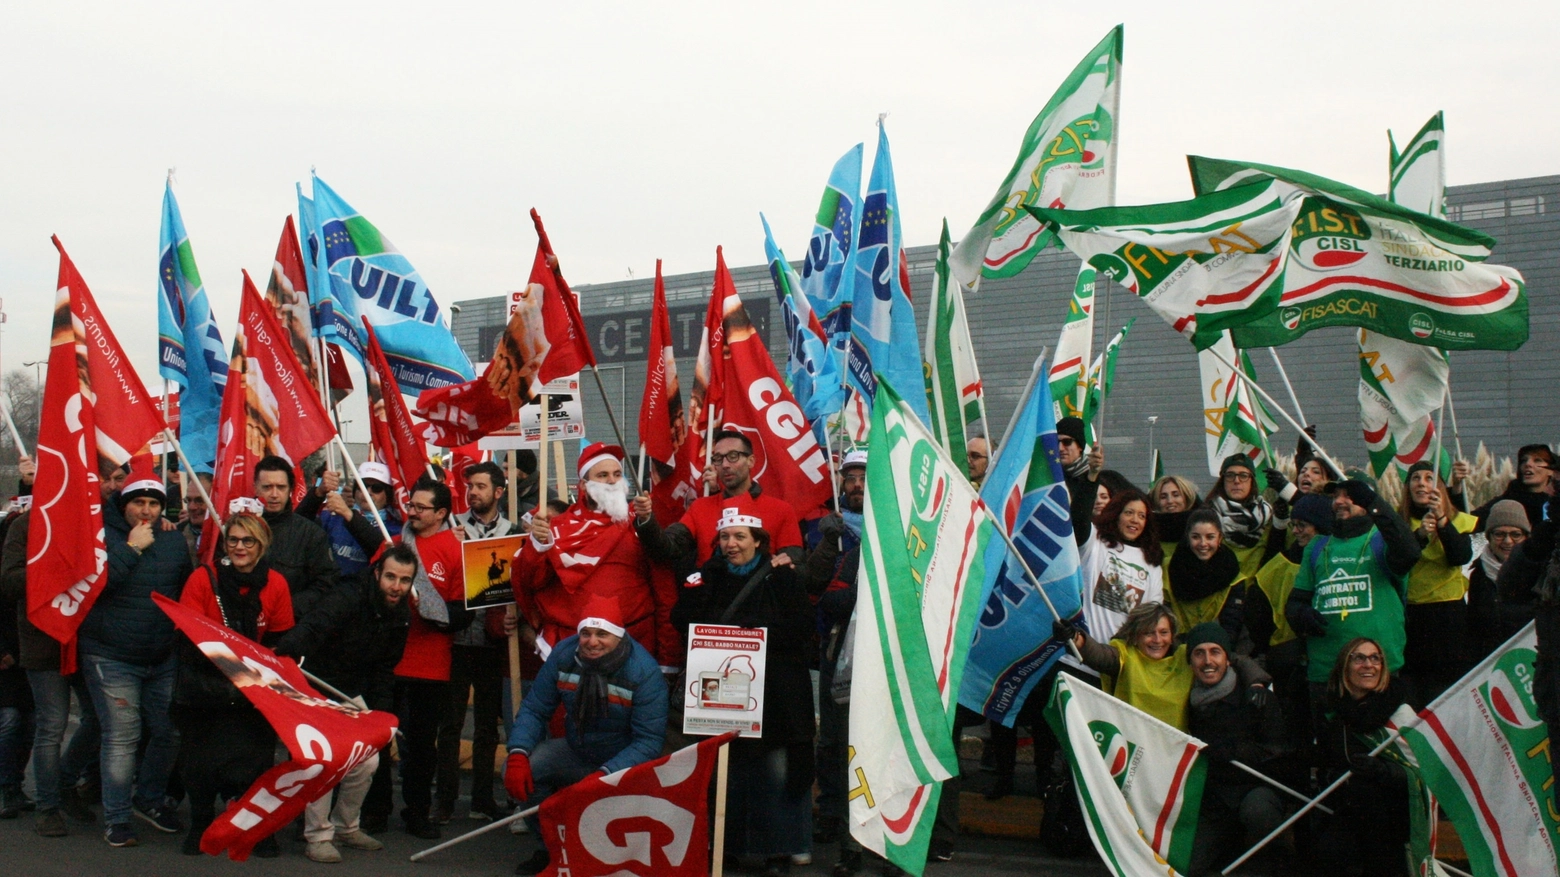 La protesta dei lavoratori dell'Oriocenter